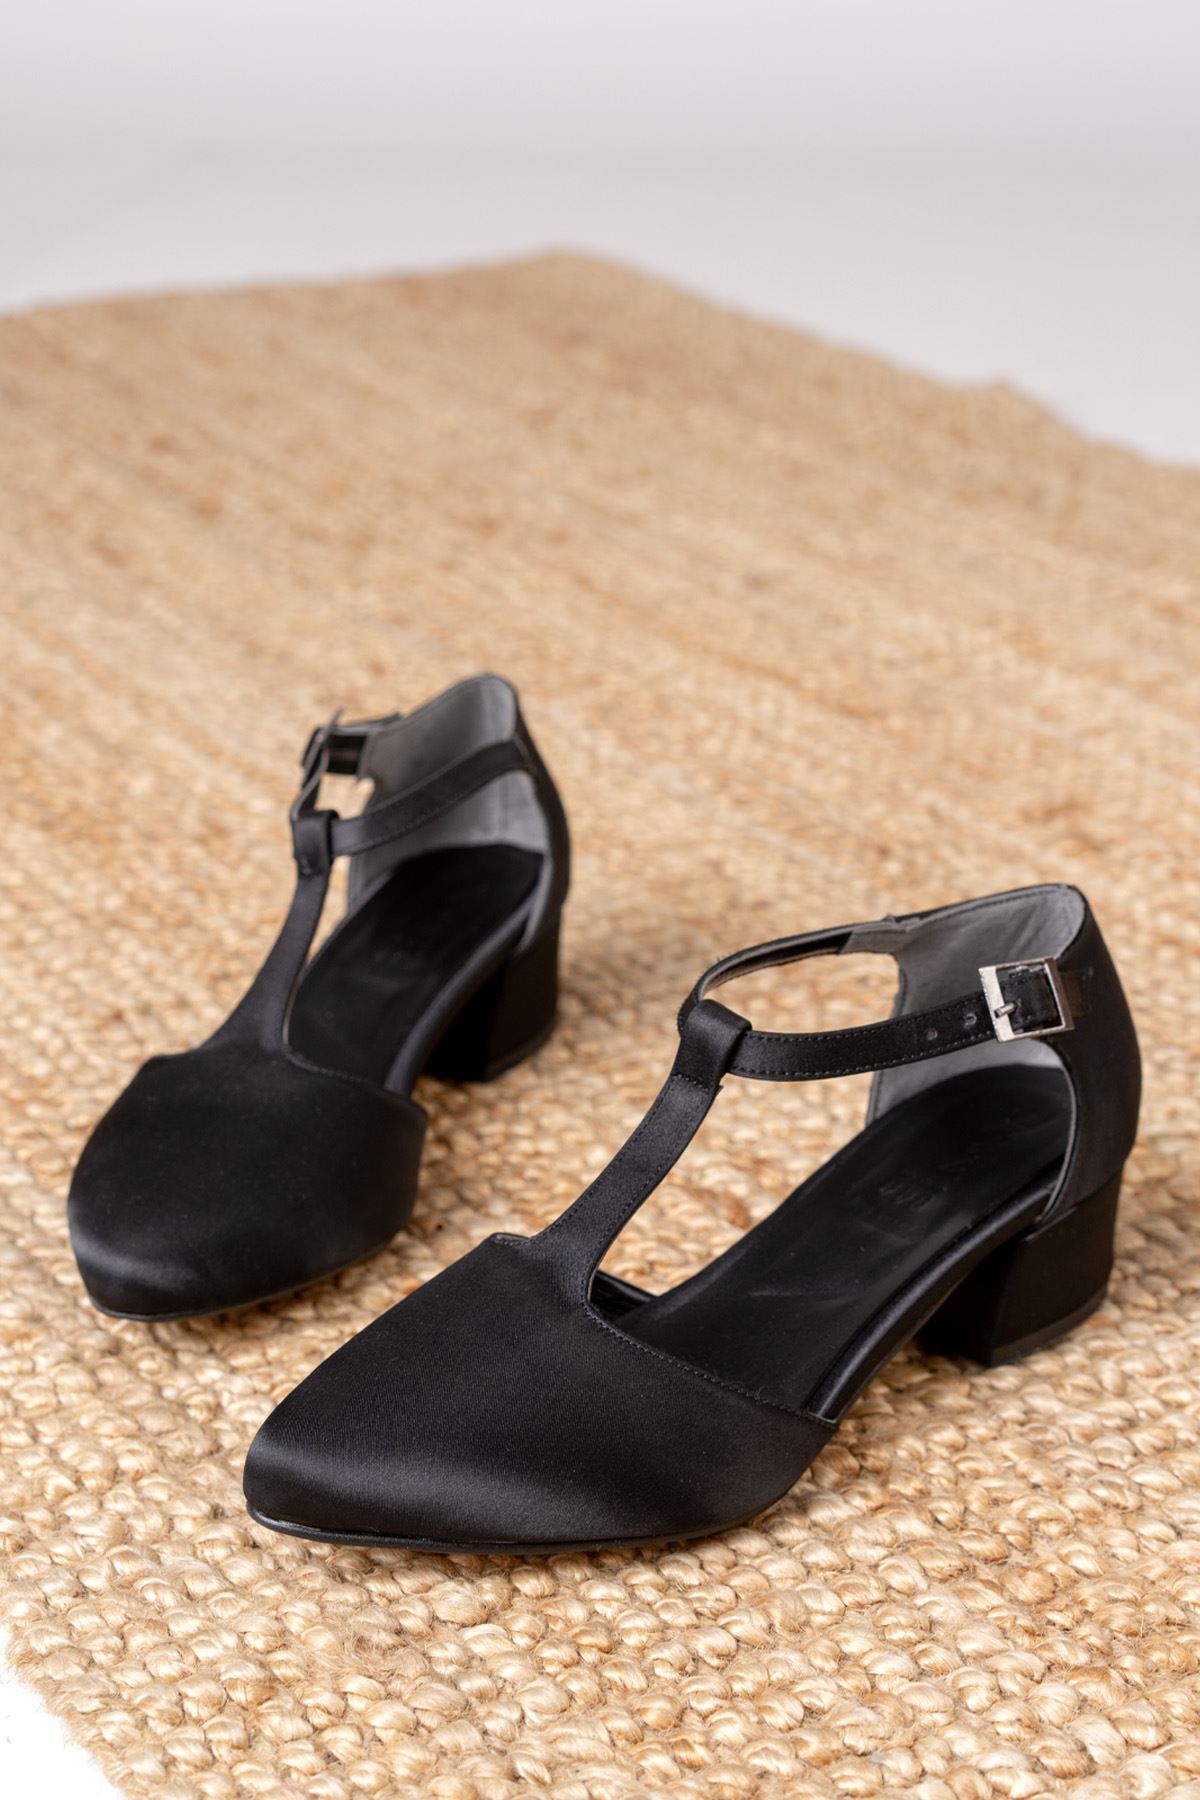 Jane Siyah Saten Topuklu Kadın Ayakkabı 